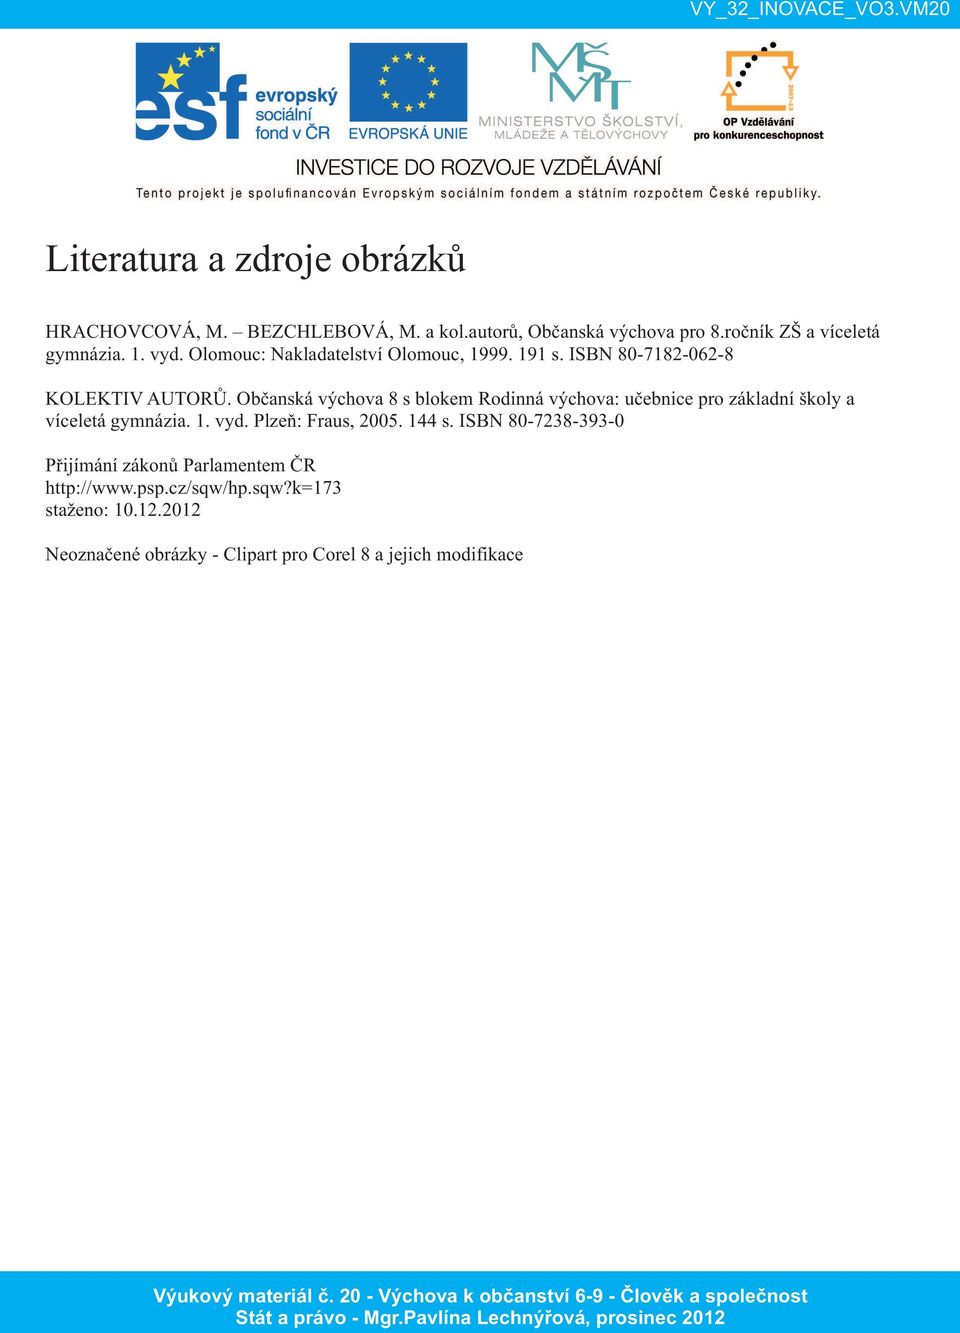 Občanská výchova 8 s blokem Rodinná výchova: učebnice pro základní školy a víceletá gymnázia. 1. vyd. Plzeň: Fraus, 2005. 144 s.